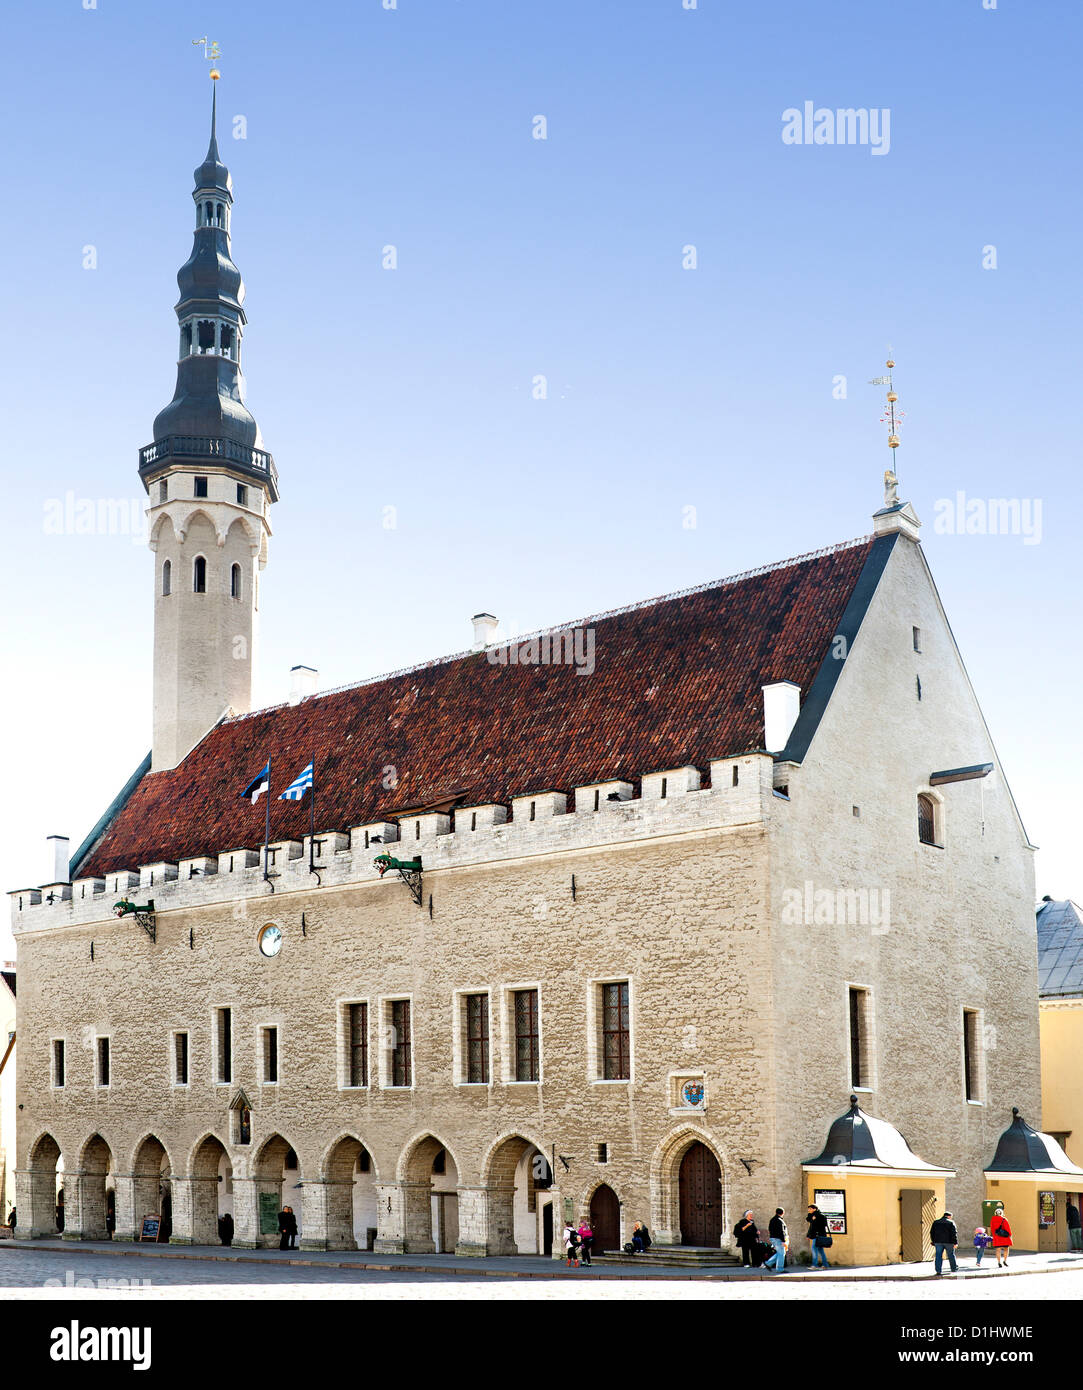 Tallinna Raekoda (Tallinn Town Hall) on Raekoja Plats (Town Hall Square) in Tallinn, the capital of Estonia. Stock Photo